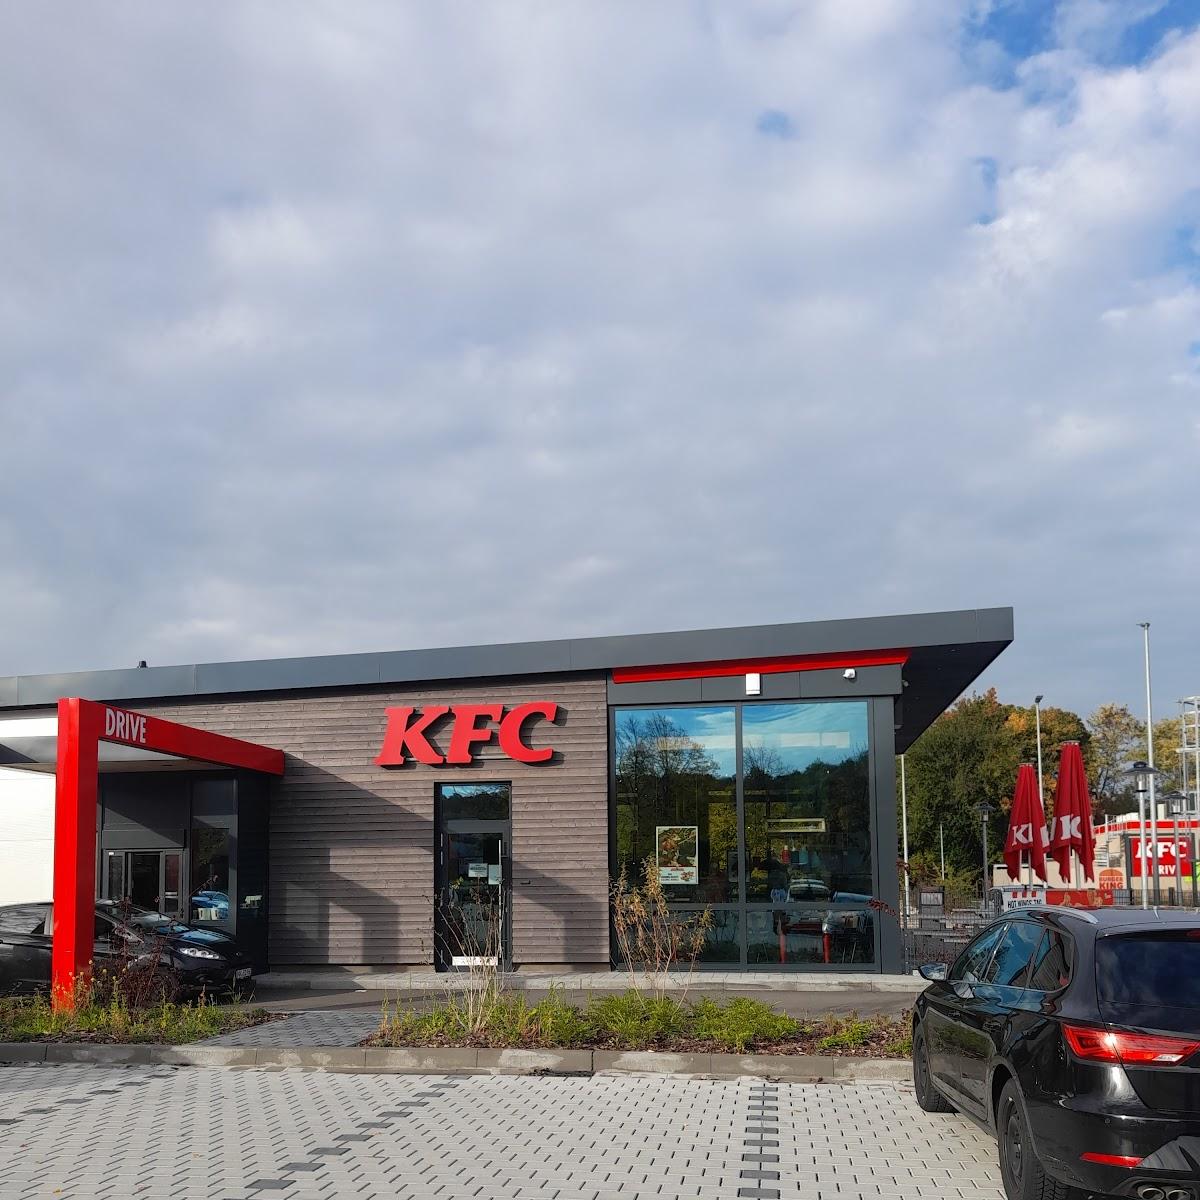 Restaurant "Kentucky Fried Chicken" in Neunkirchen